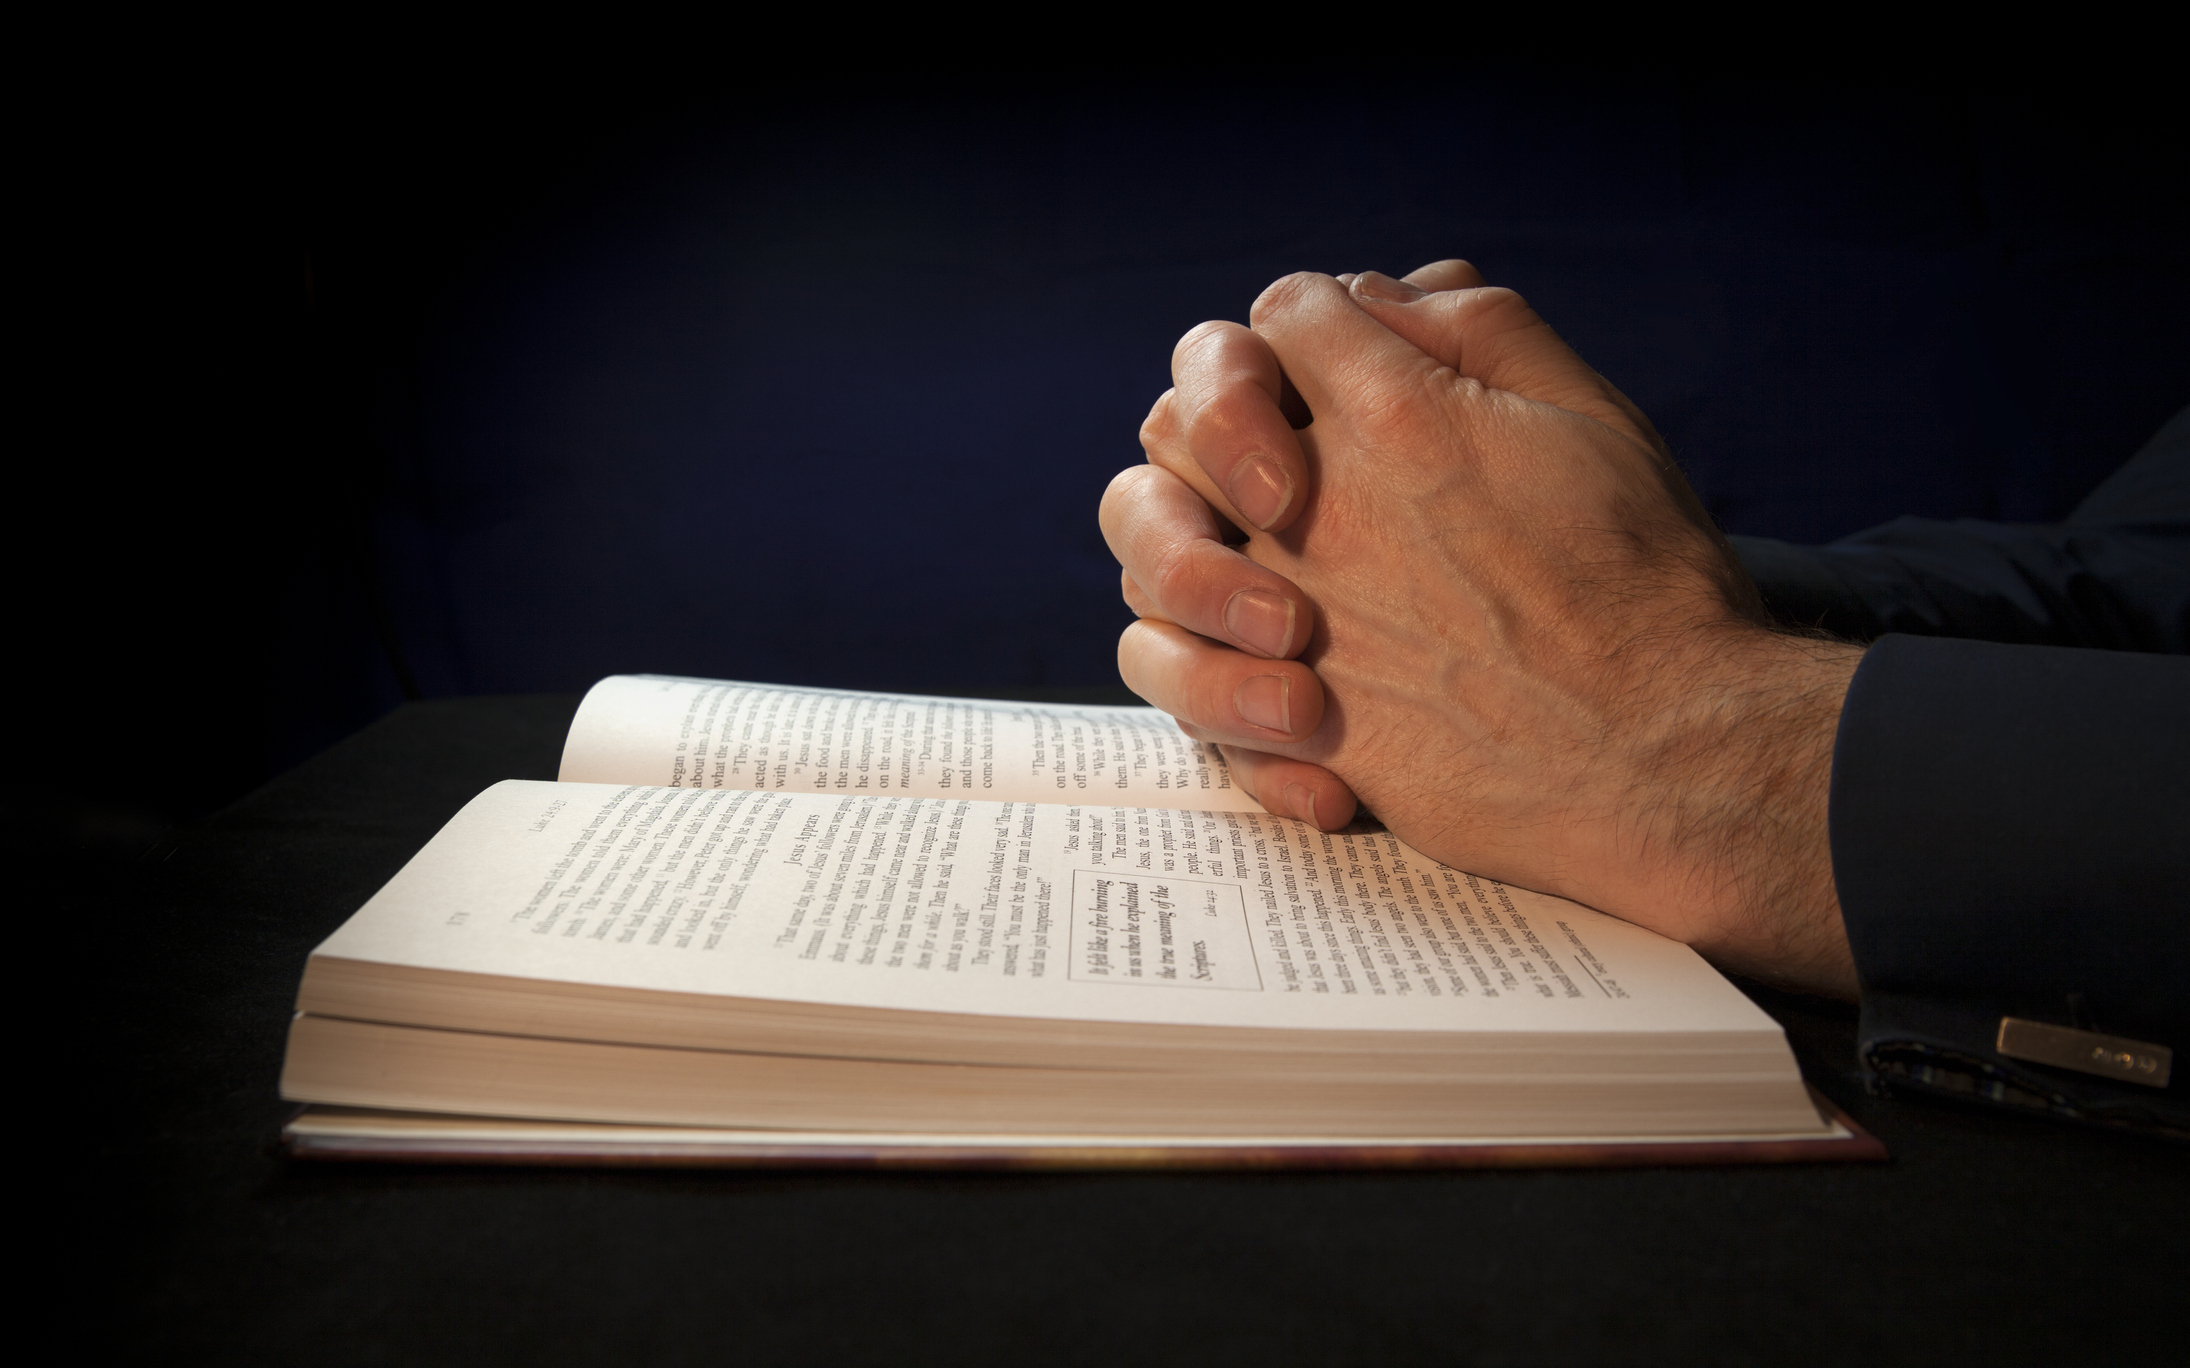 Imagem: mãos sobre bíblia, em posição de reza